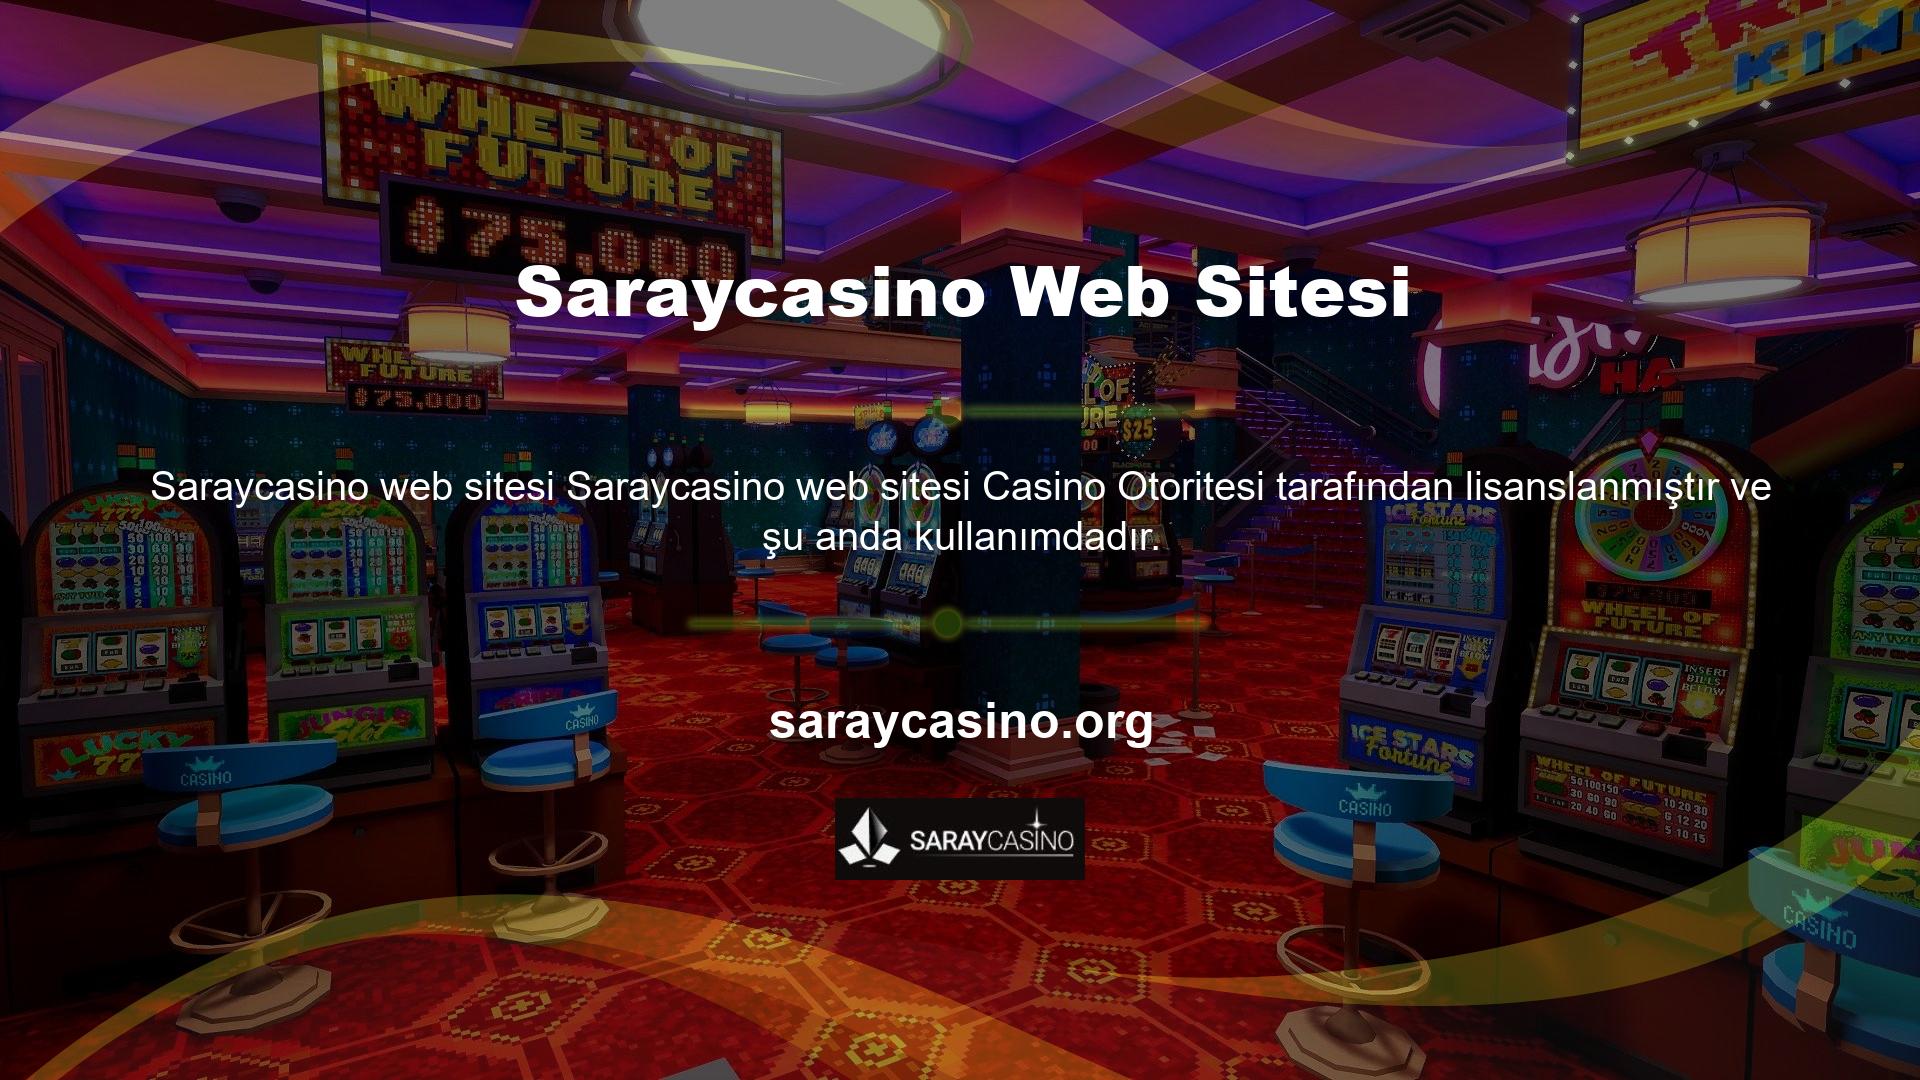 Saraycasino ayrıca oyunculara bahis, canlı bahis, casino, canlı casino ve sanal sporlar da sunmaktadır